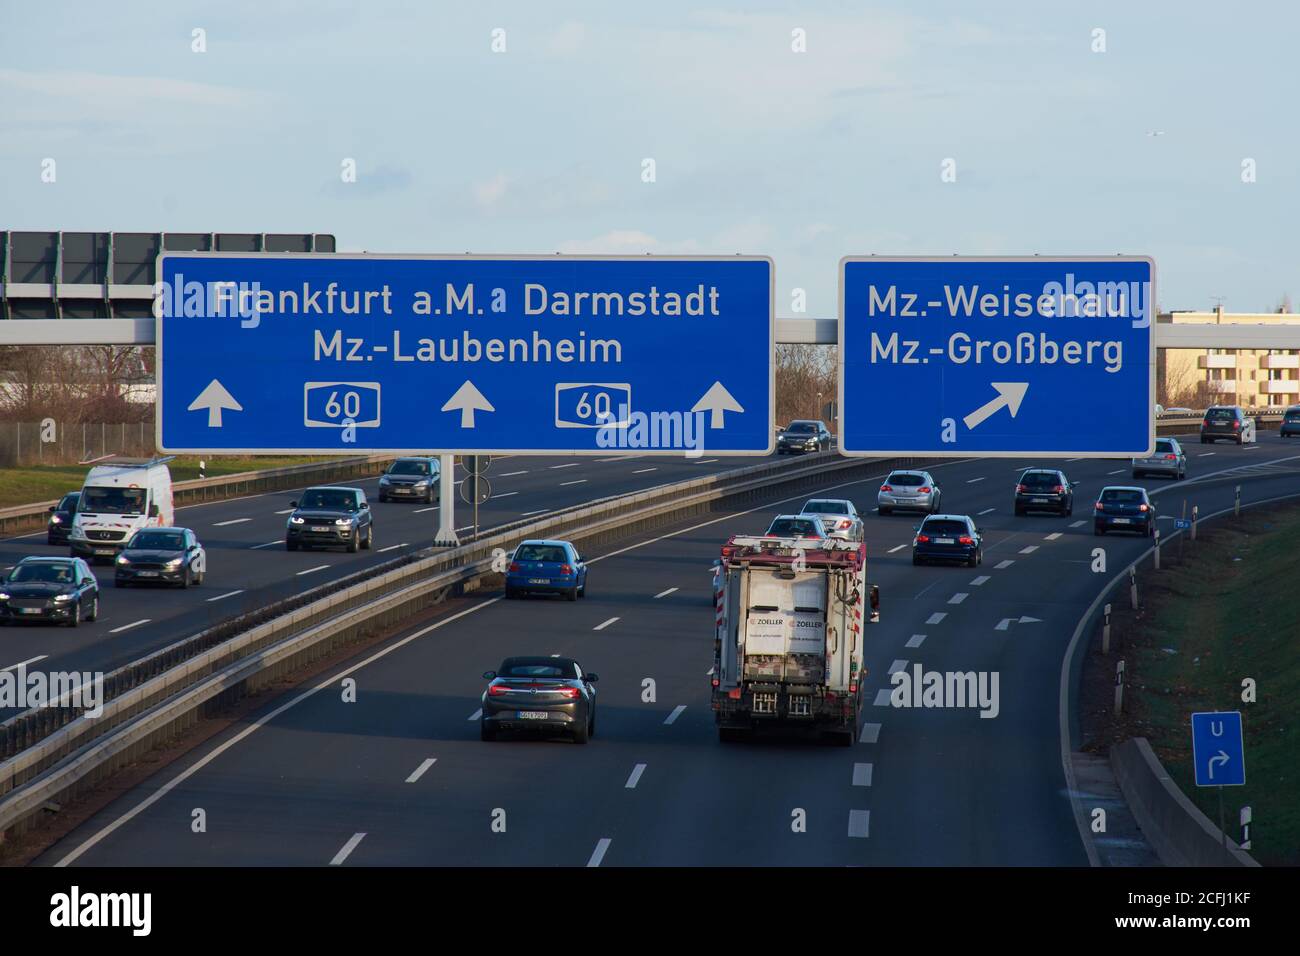 MAINZ, DEUTSCHLAND - 08. Dez 2017: Mainz, Deutschland - 08. Dez 2017: Autos auf der deutschen Autobahn A60 mit blauen Schildern Richtung Frankfurt a. Haupt, Ger Stockfoto